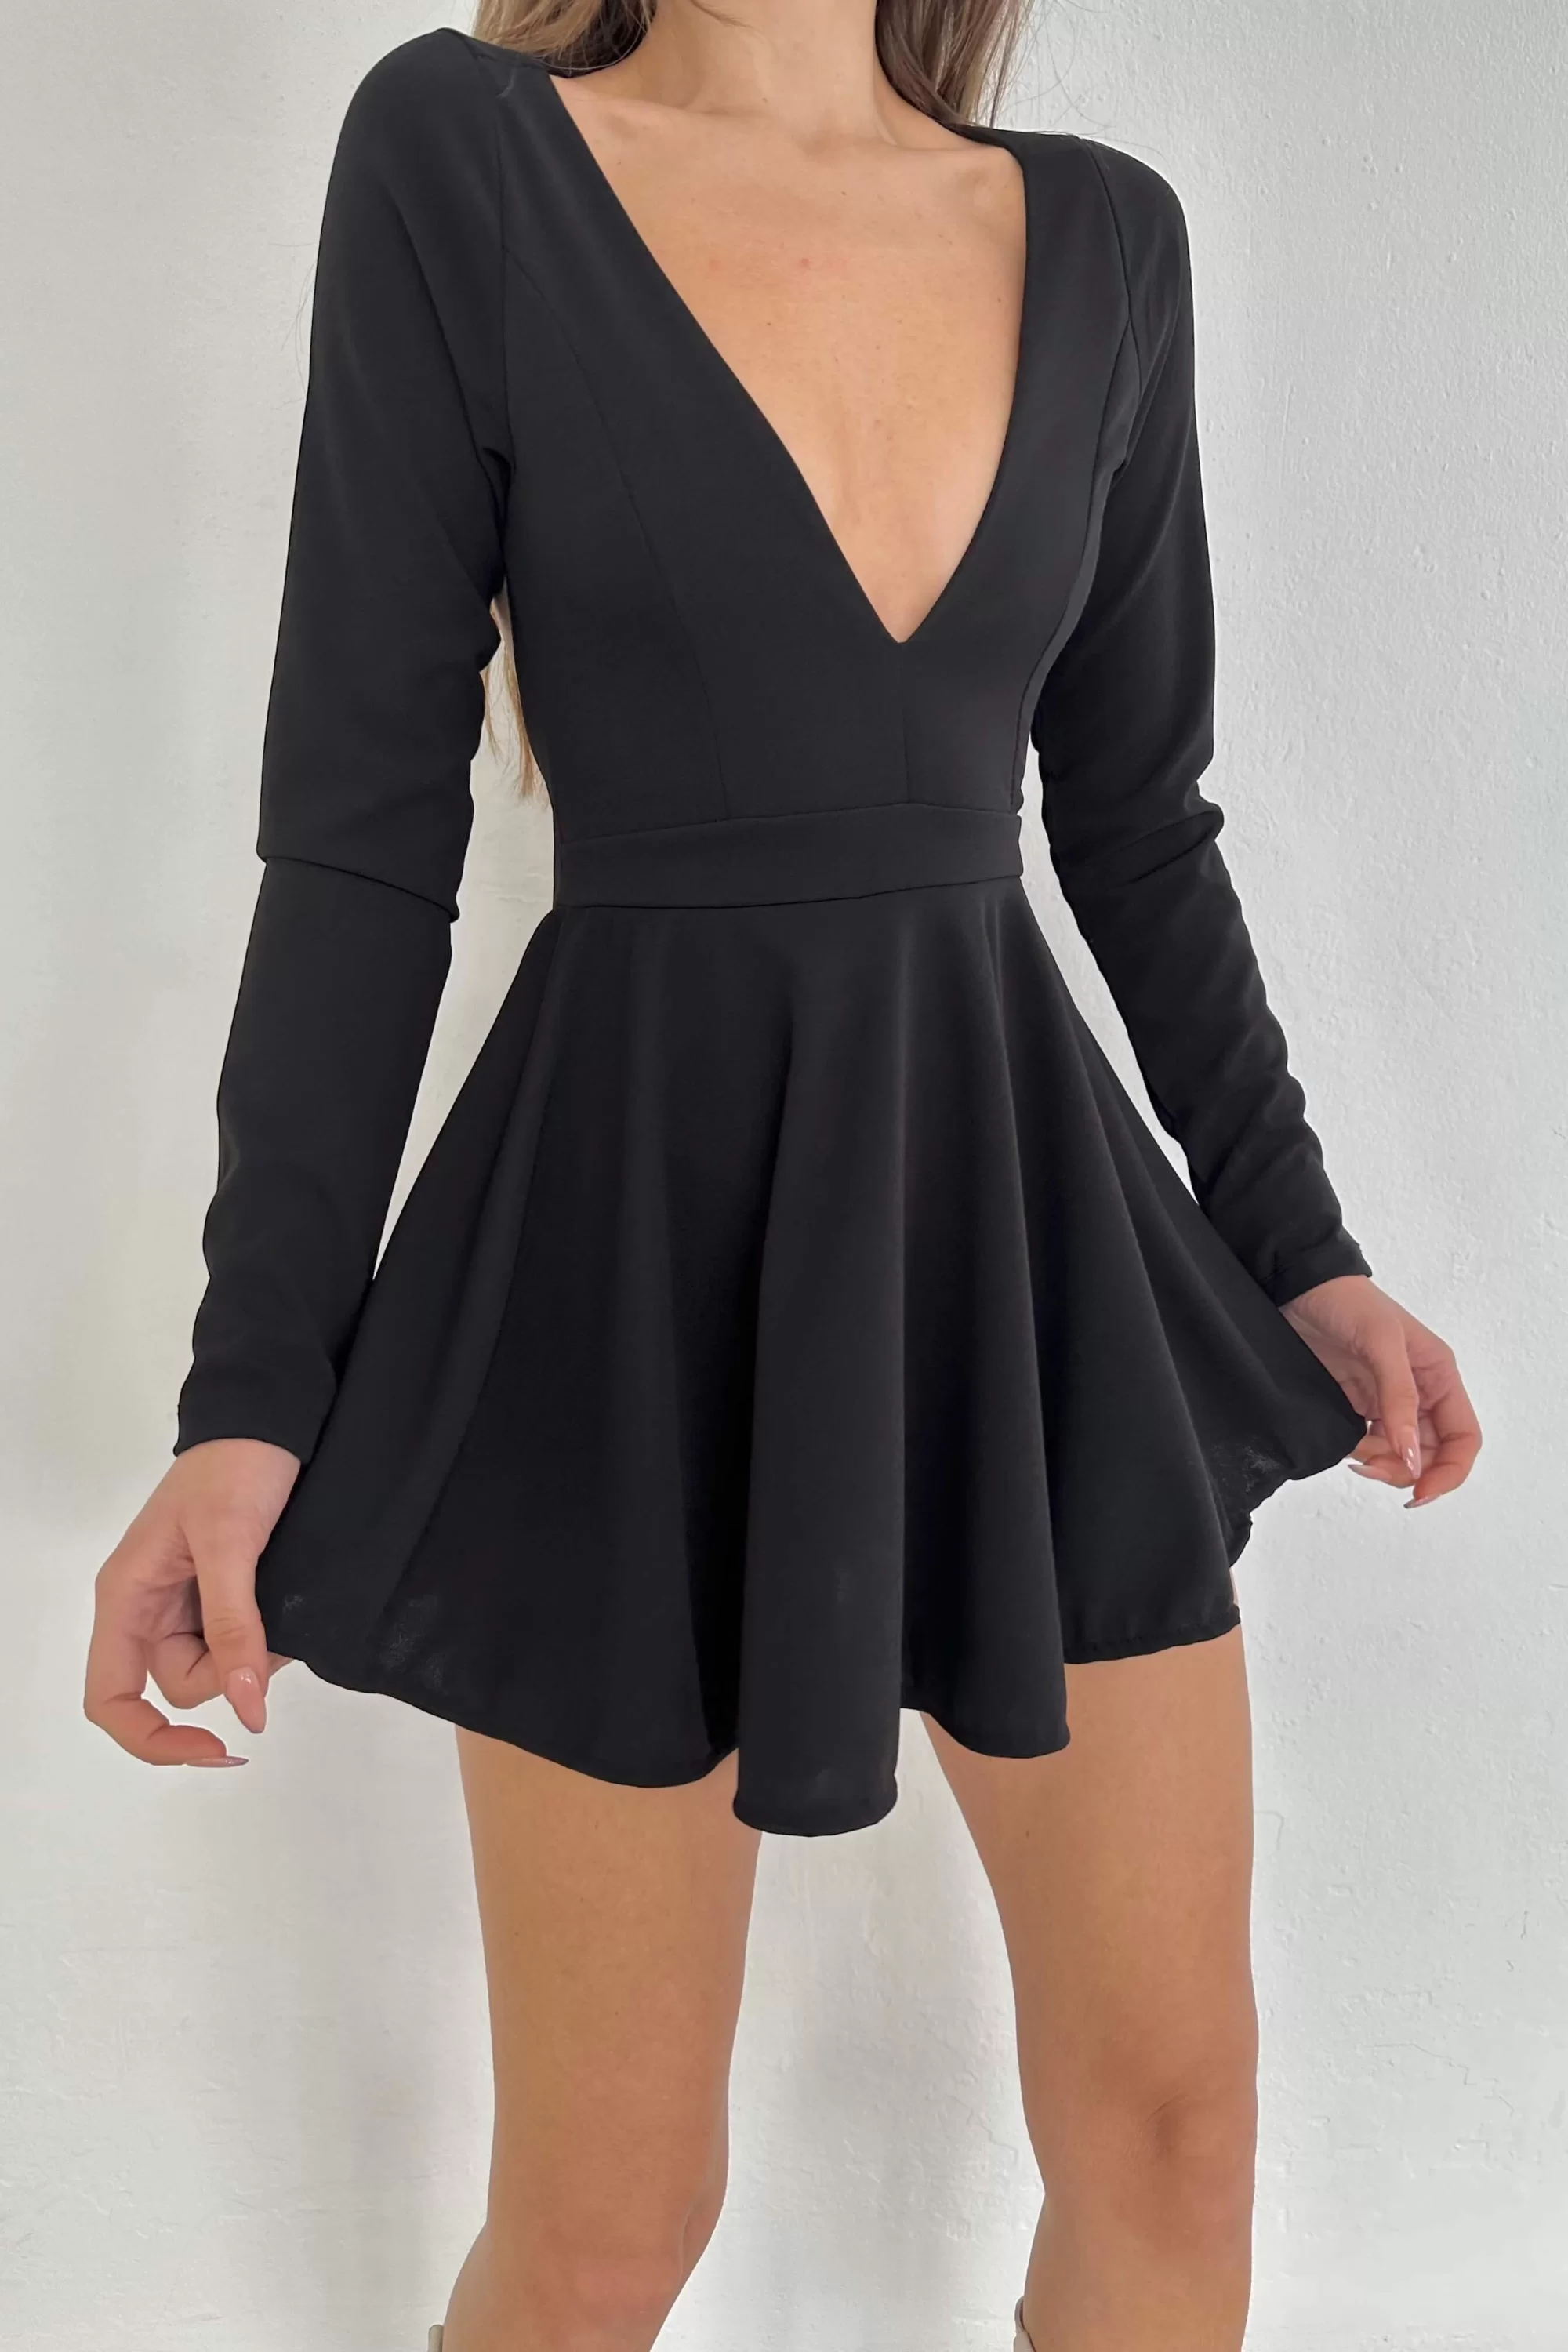 Kadın Siyah Eteği Volanlı Elbise 1026-1114